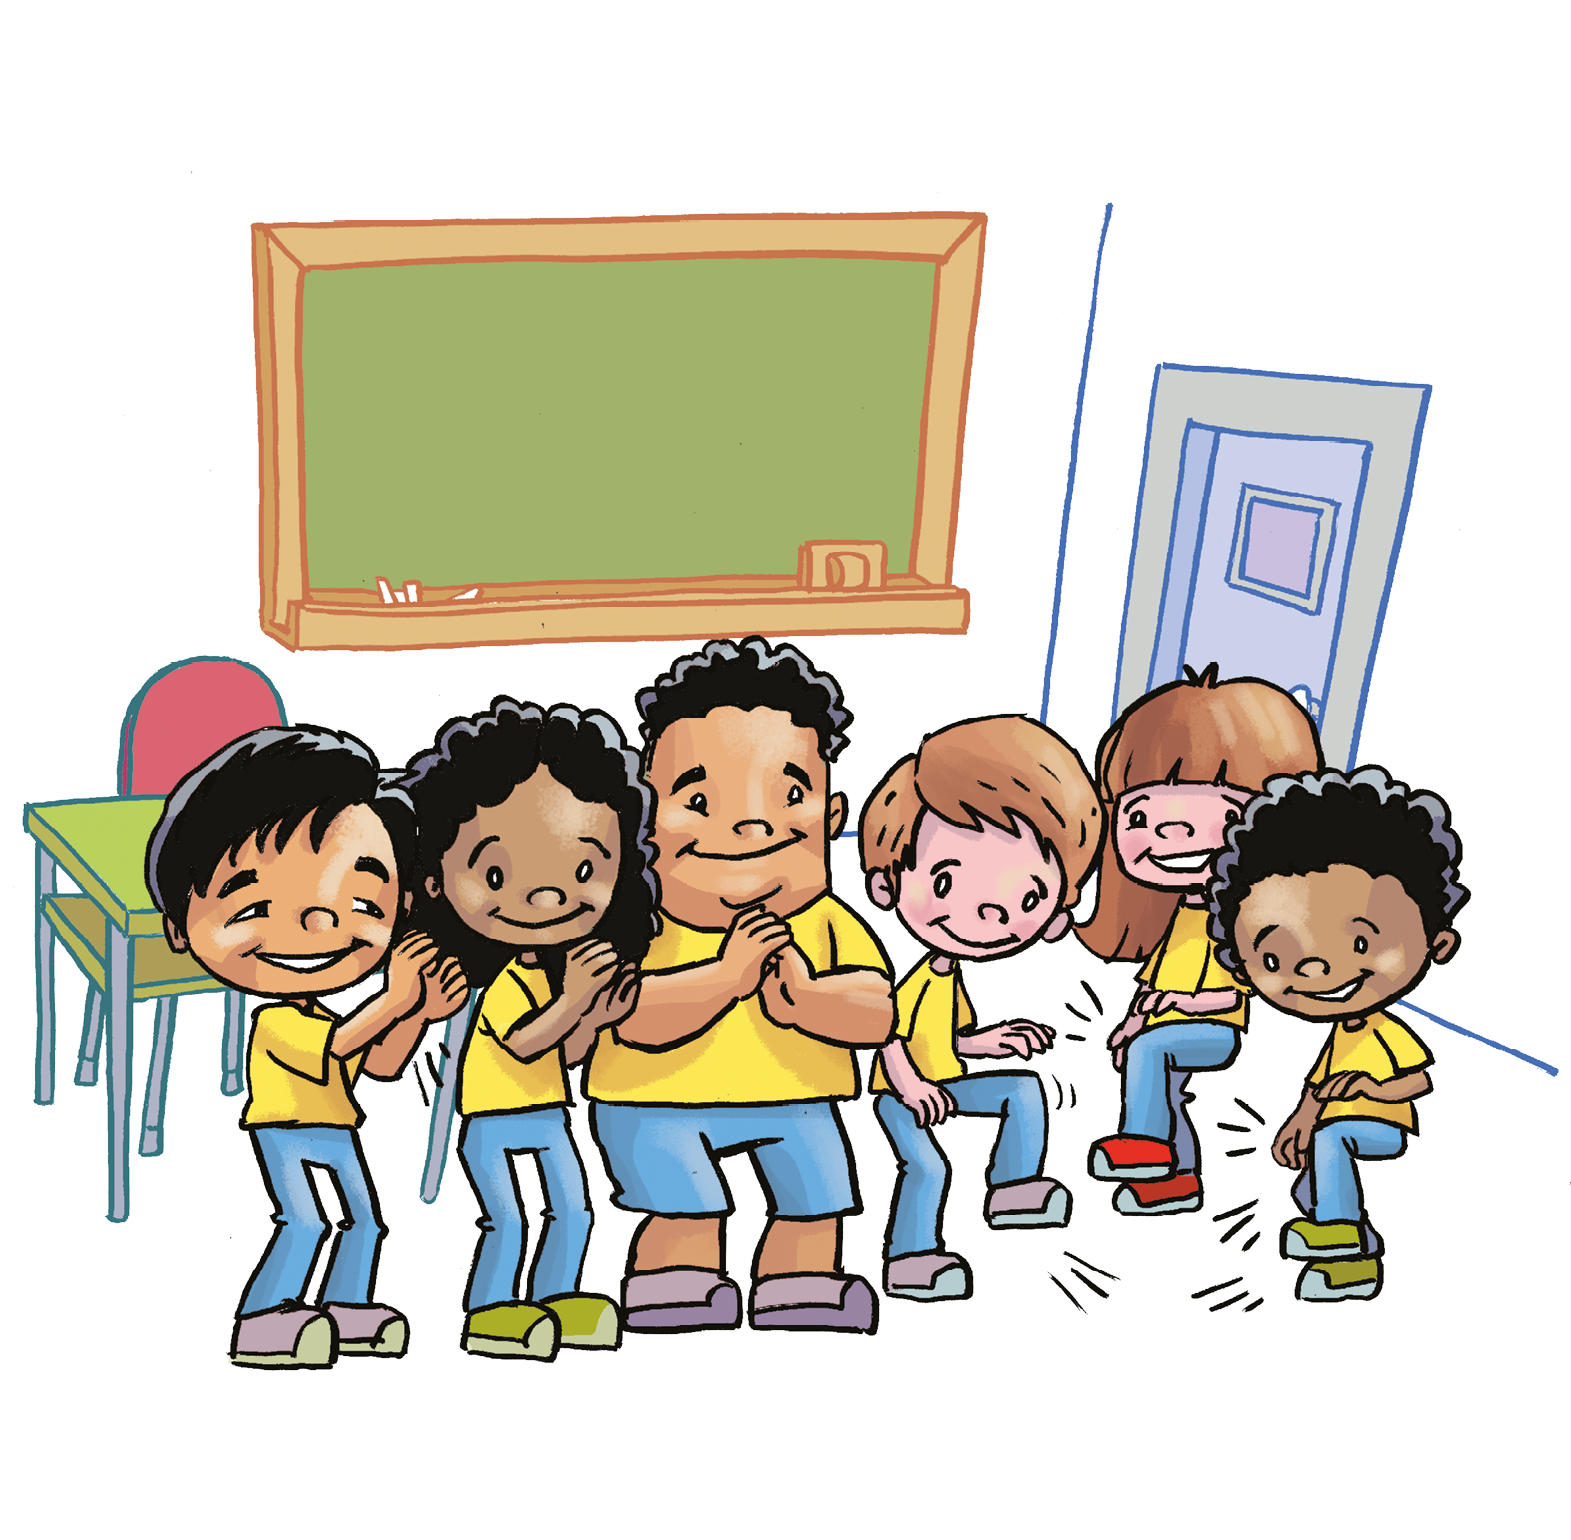 Ilustração. Diversas crianças usando uniforme com blusa amarela e calça azul estão de pé e sorrindo; à direita, três crianças estão dançando com a perna esquerda levantada. Ao redor, há carteiras, uma lousa e uma porta.